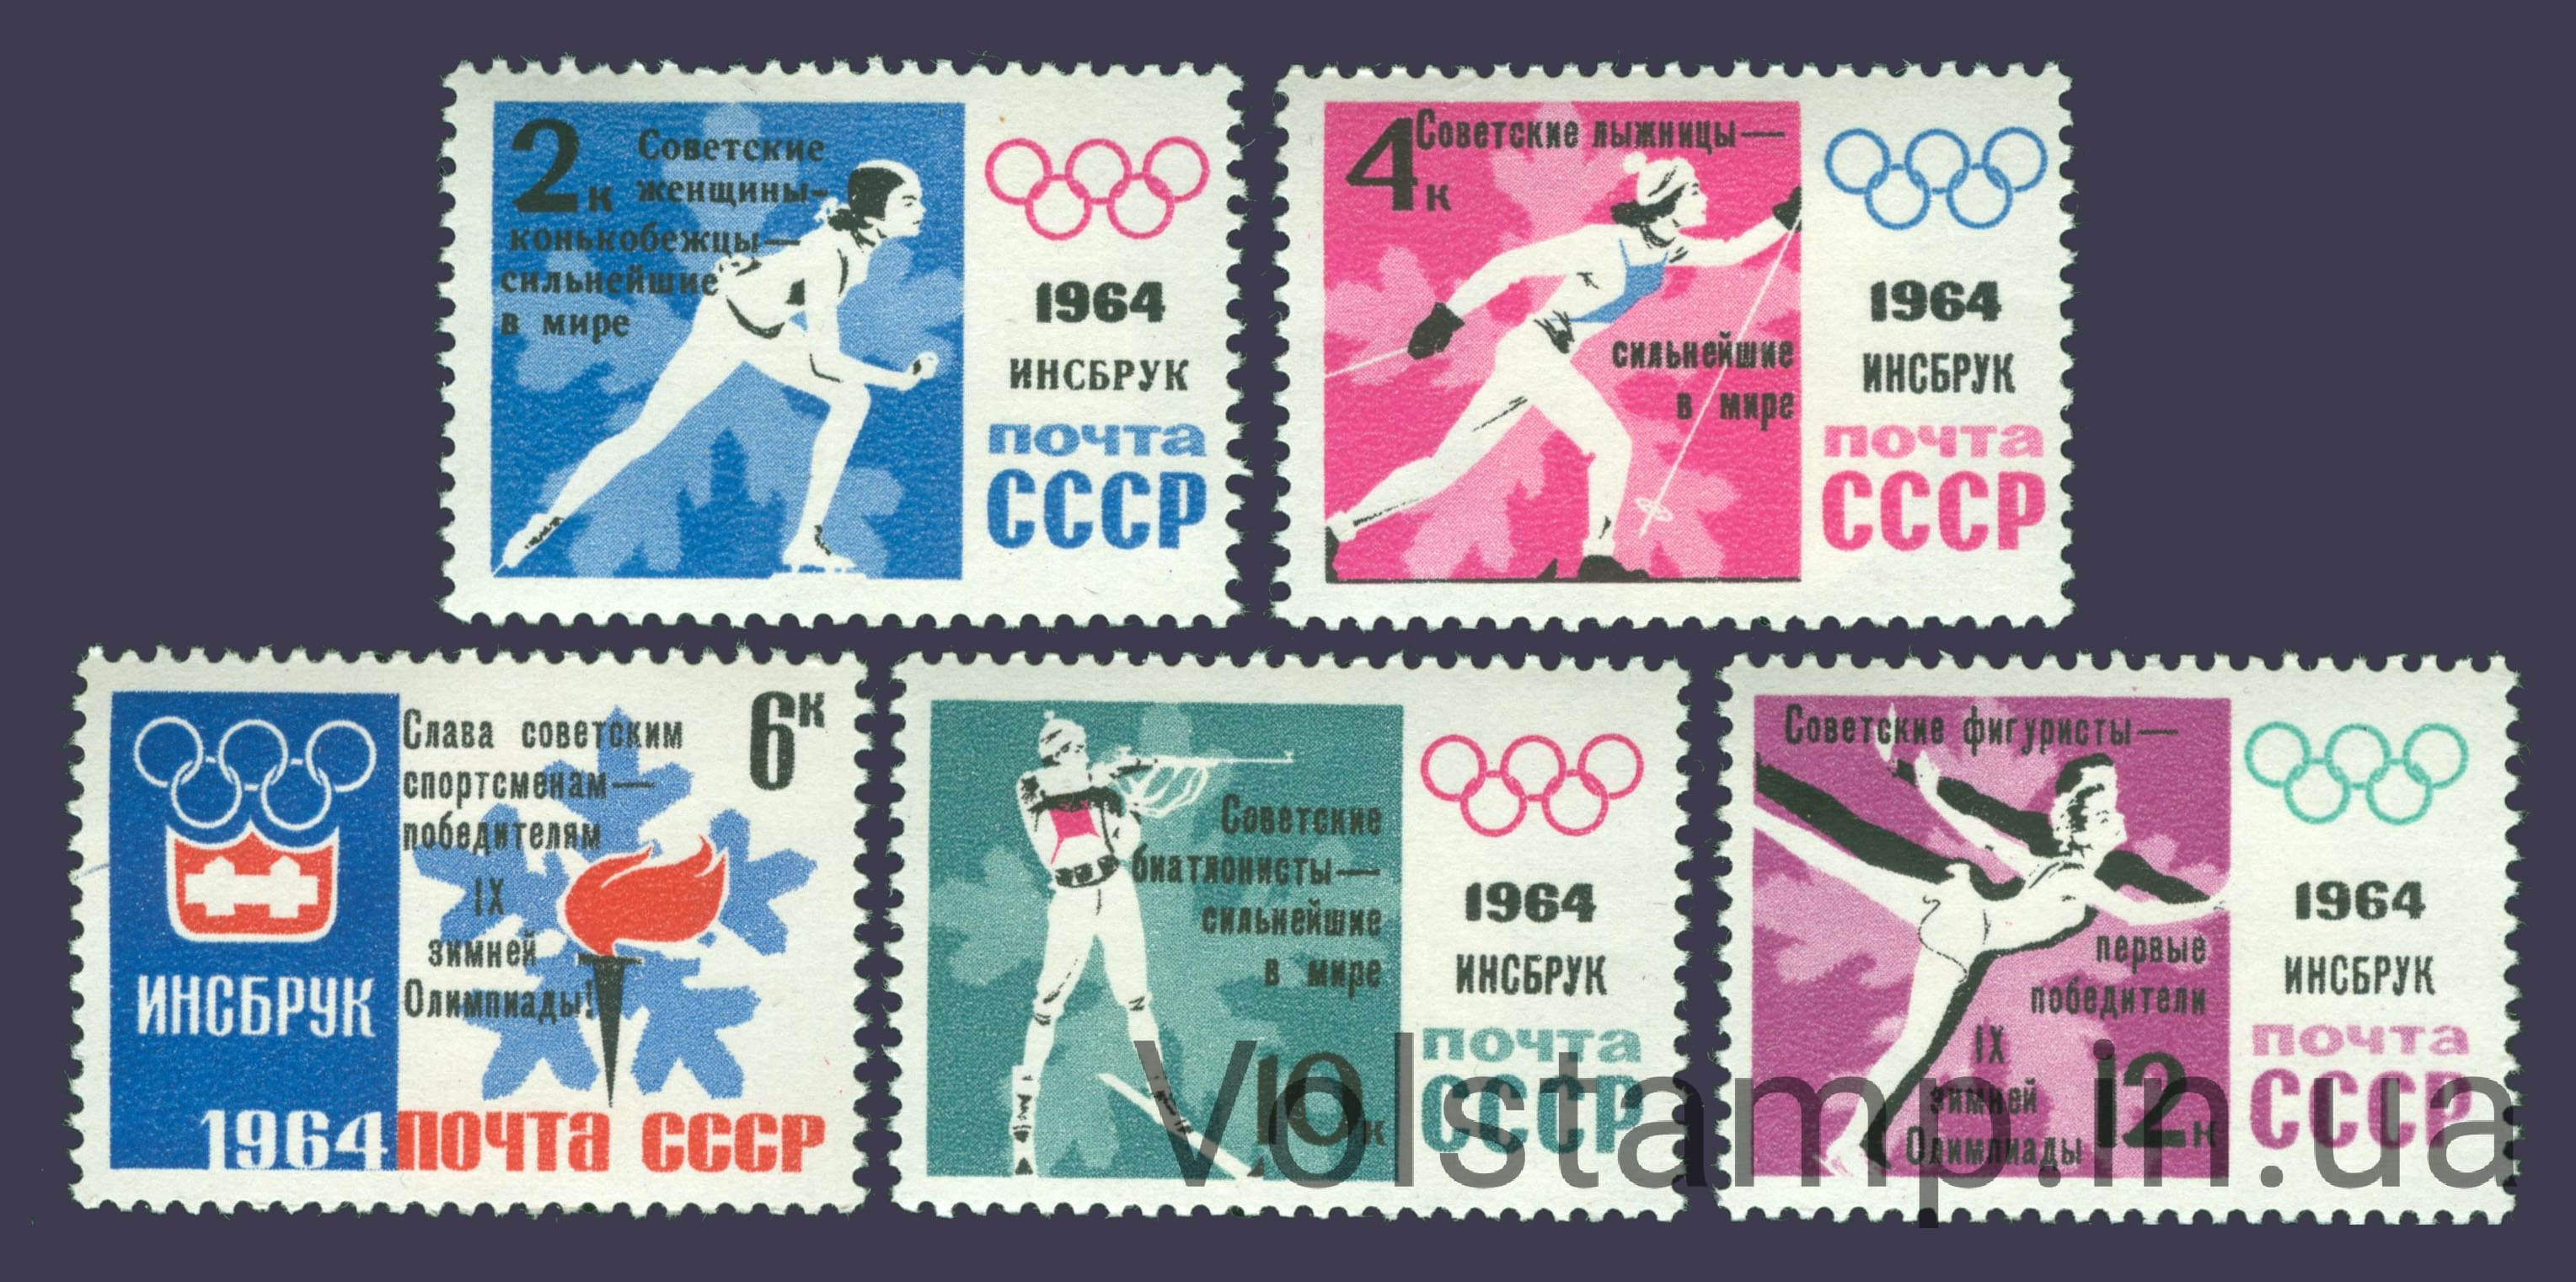 1964 серия марок Победы советских спортсменов на IX зимних Олимпийских играх №2915-2919